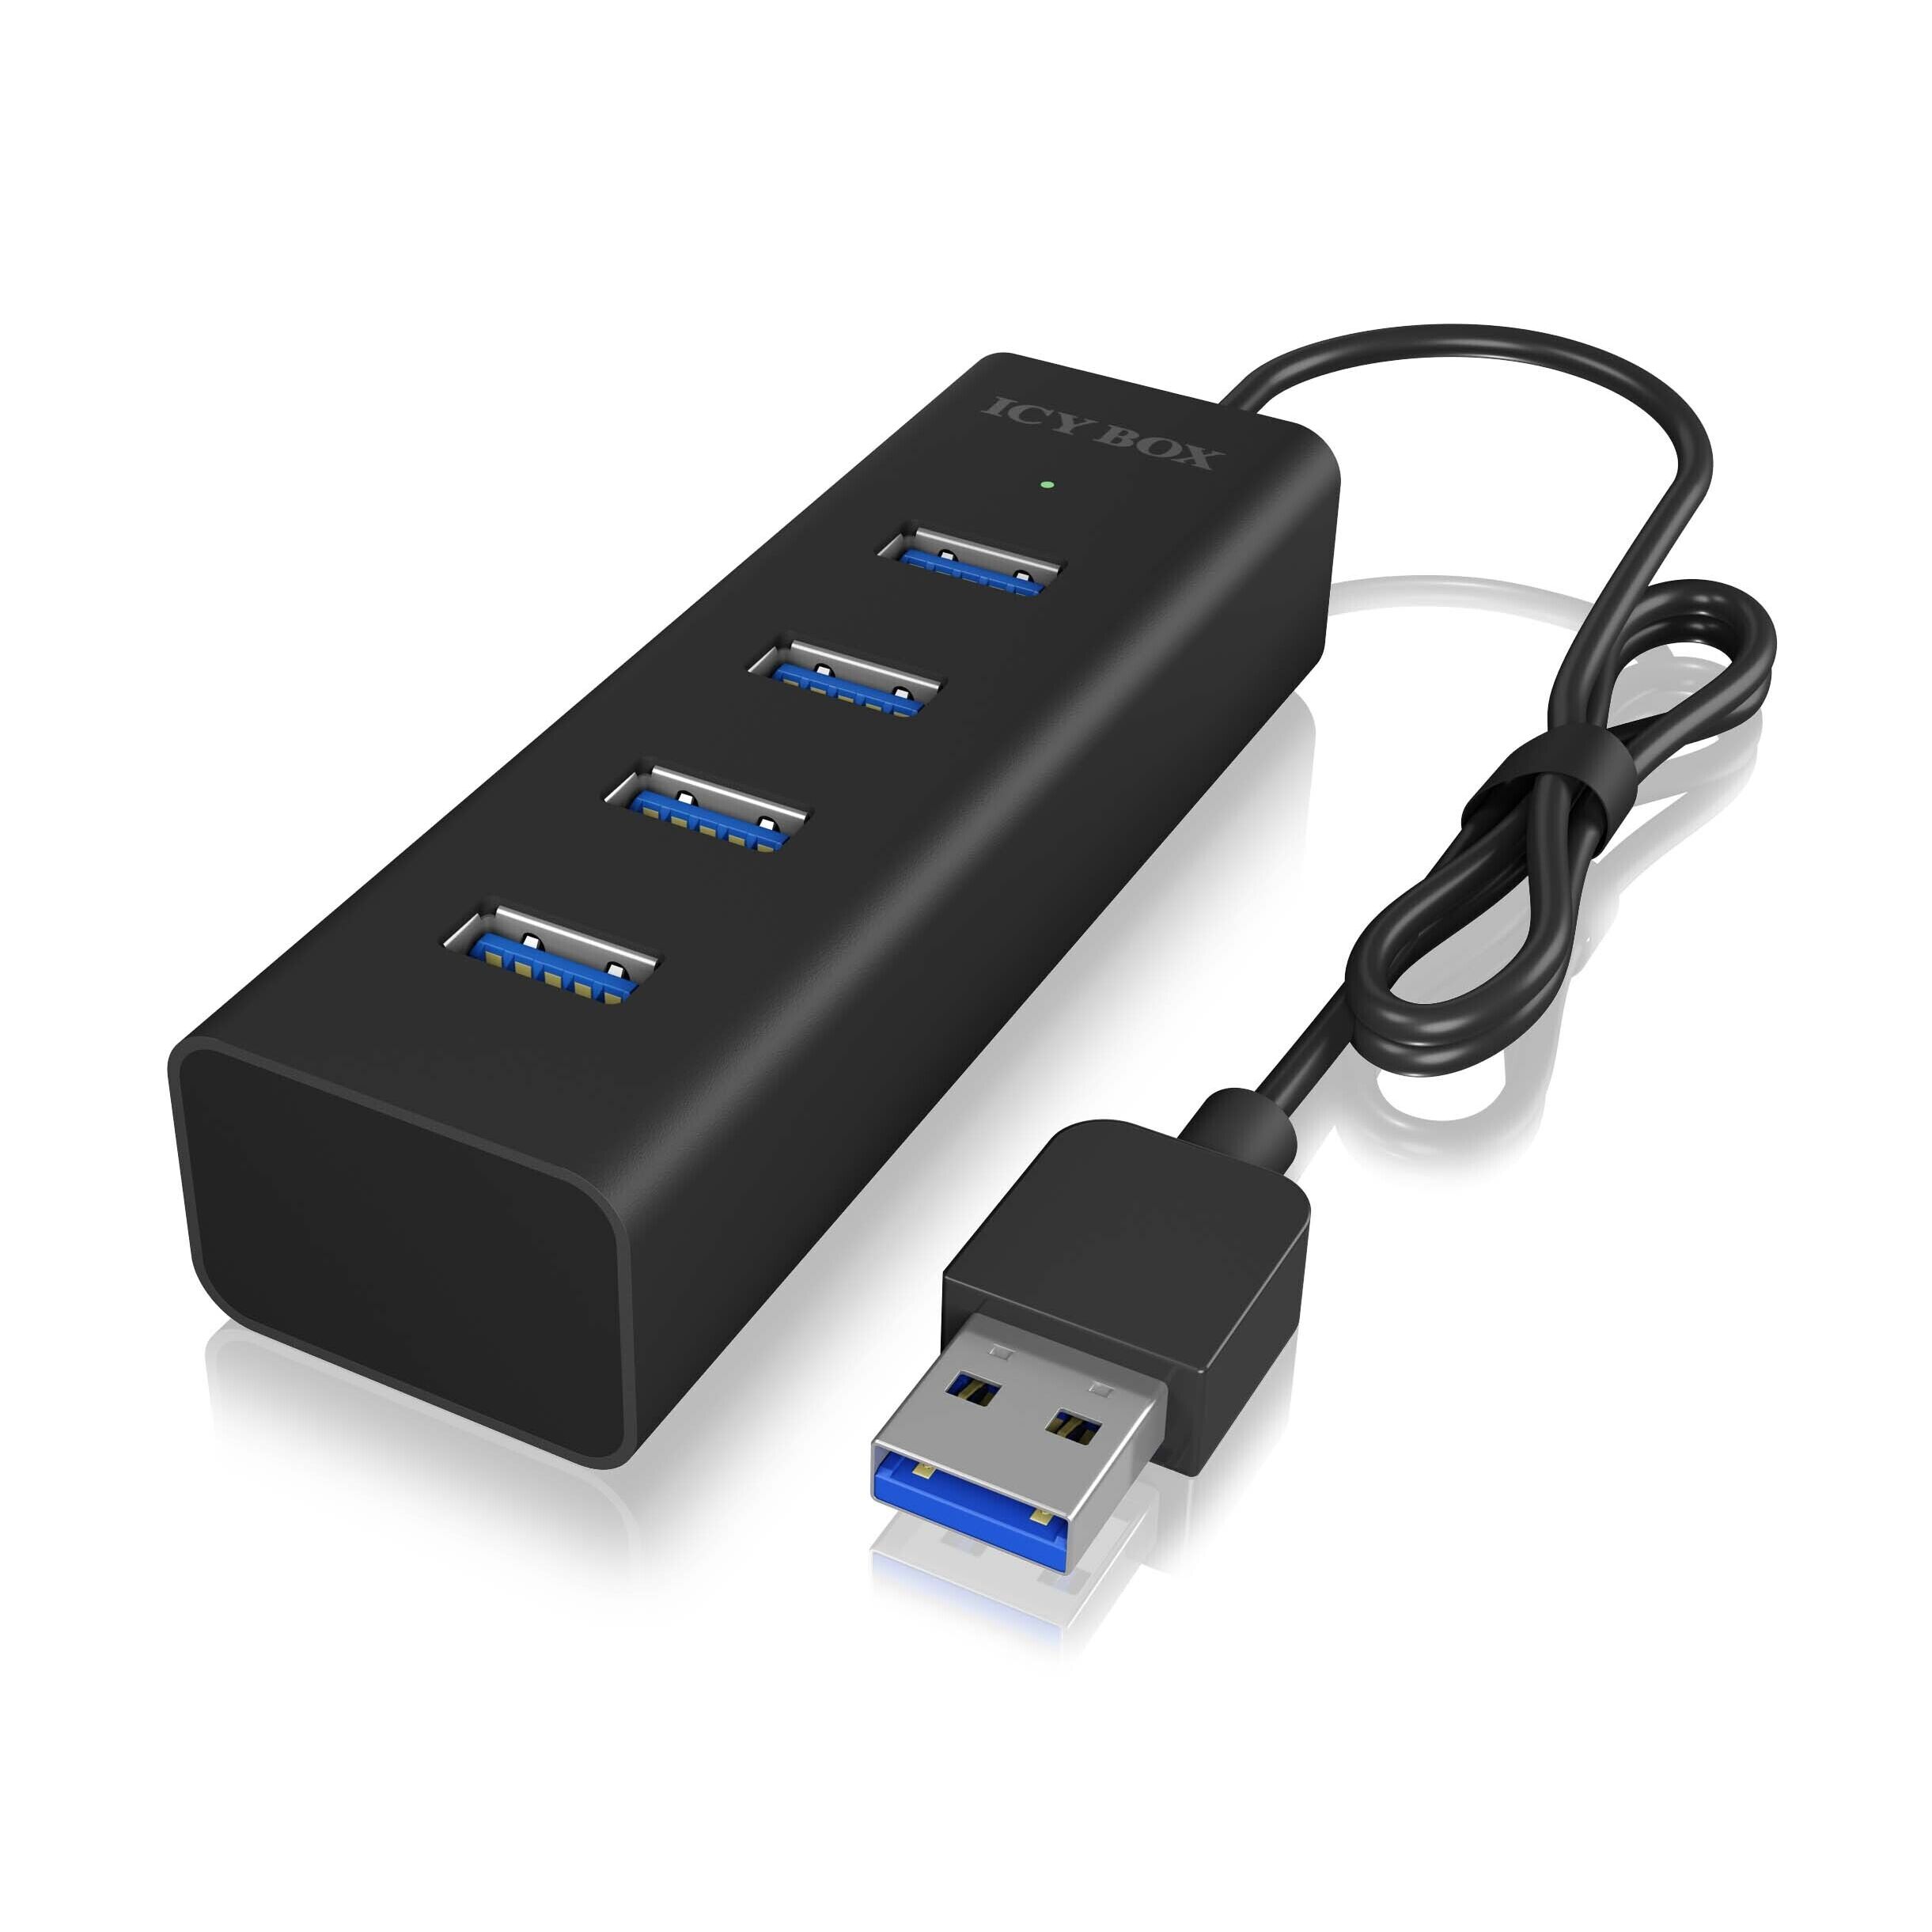 ICY BOX - 4 Port USB 3.0 Hub